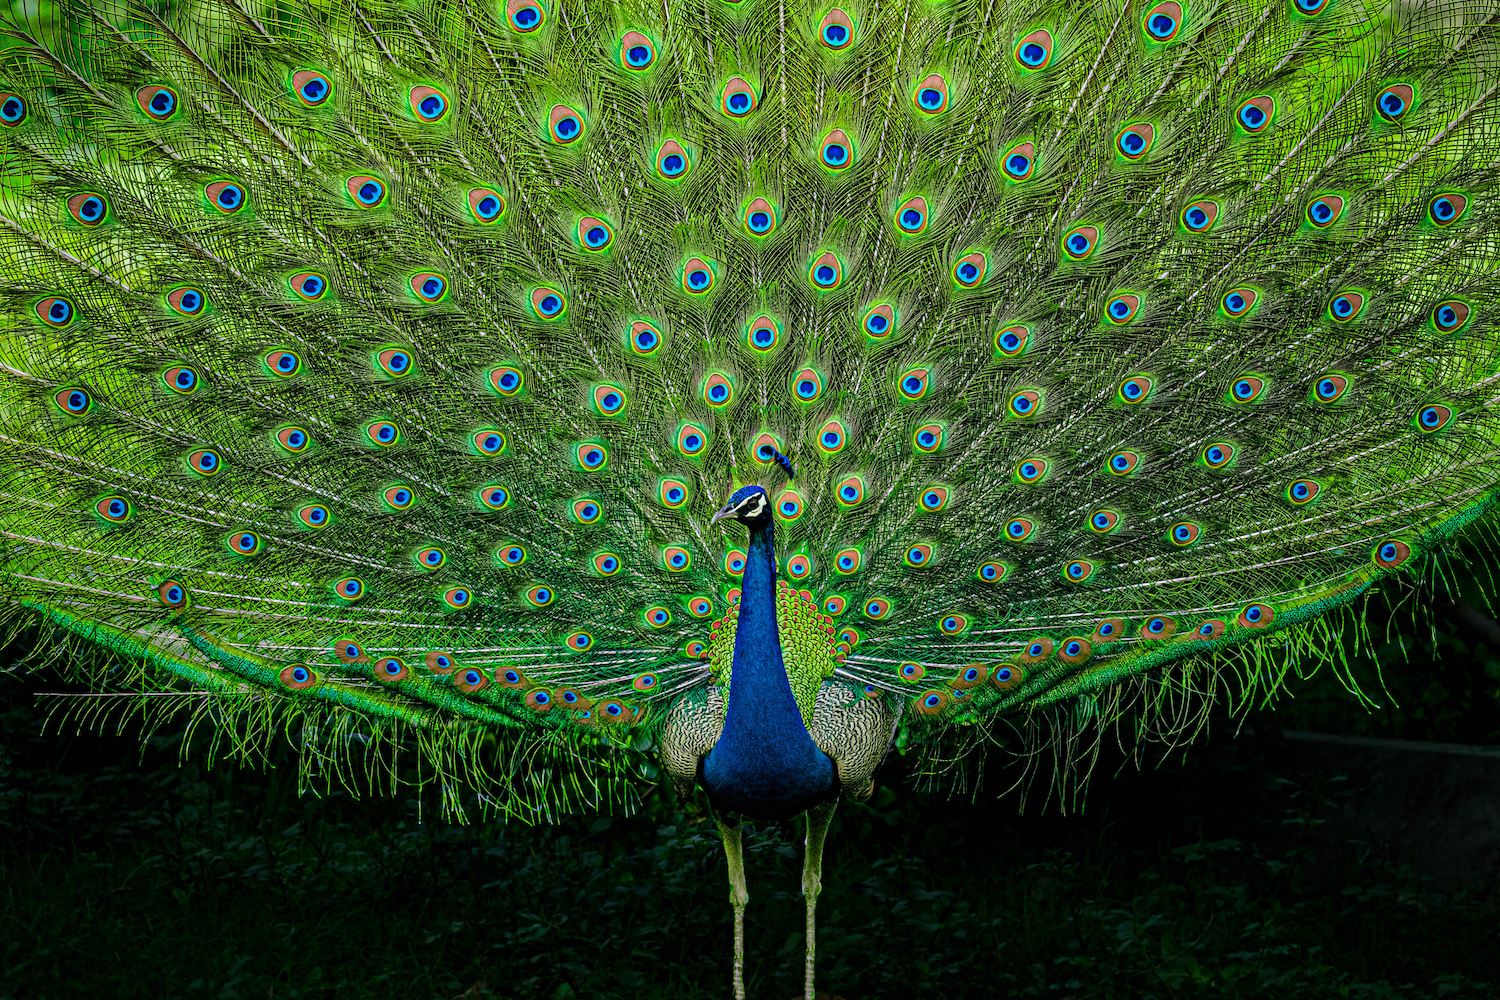 Close-up of peacock,New Delhi,Delhi,India